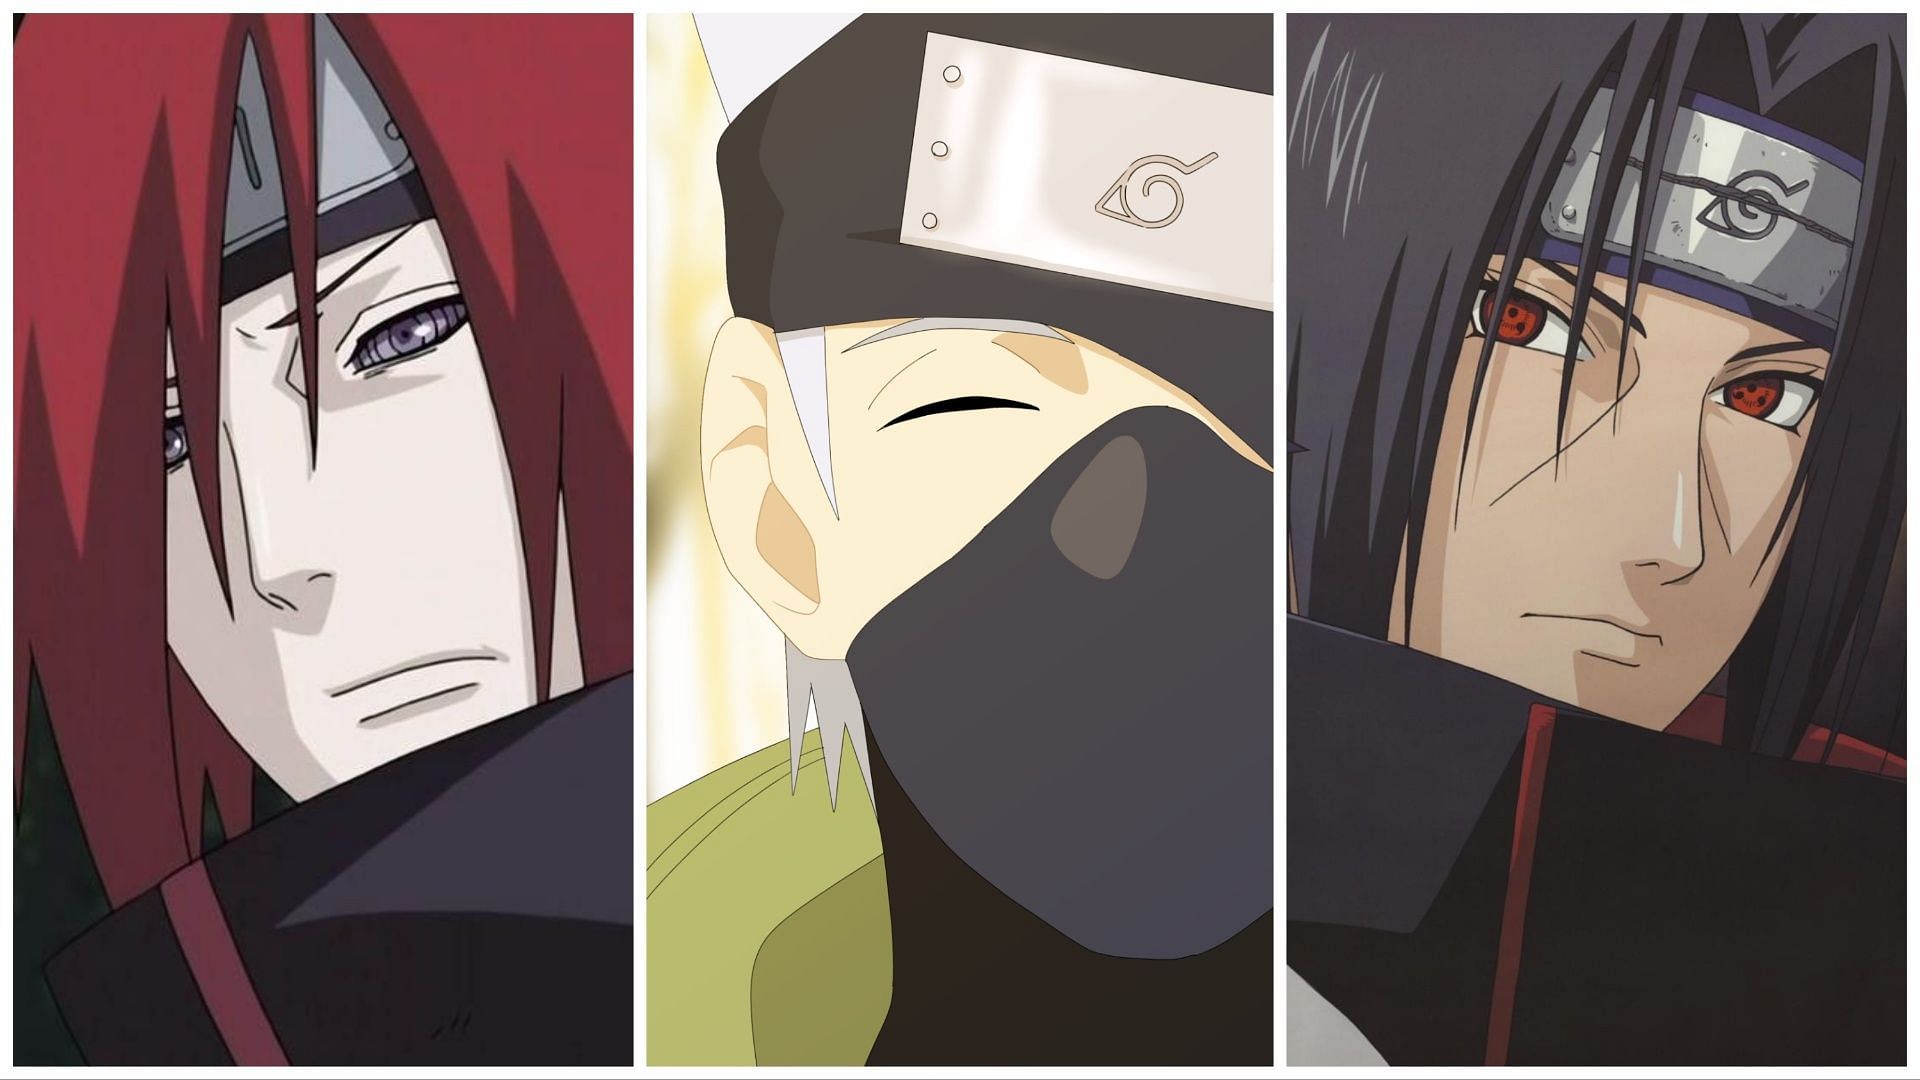 Uzumaki Clan vs Uchiha Clan (Naruto, Minato x Itachi, Sasuke